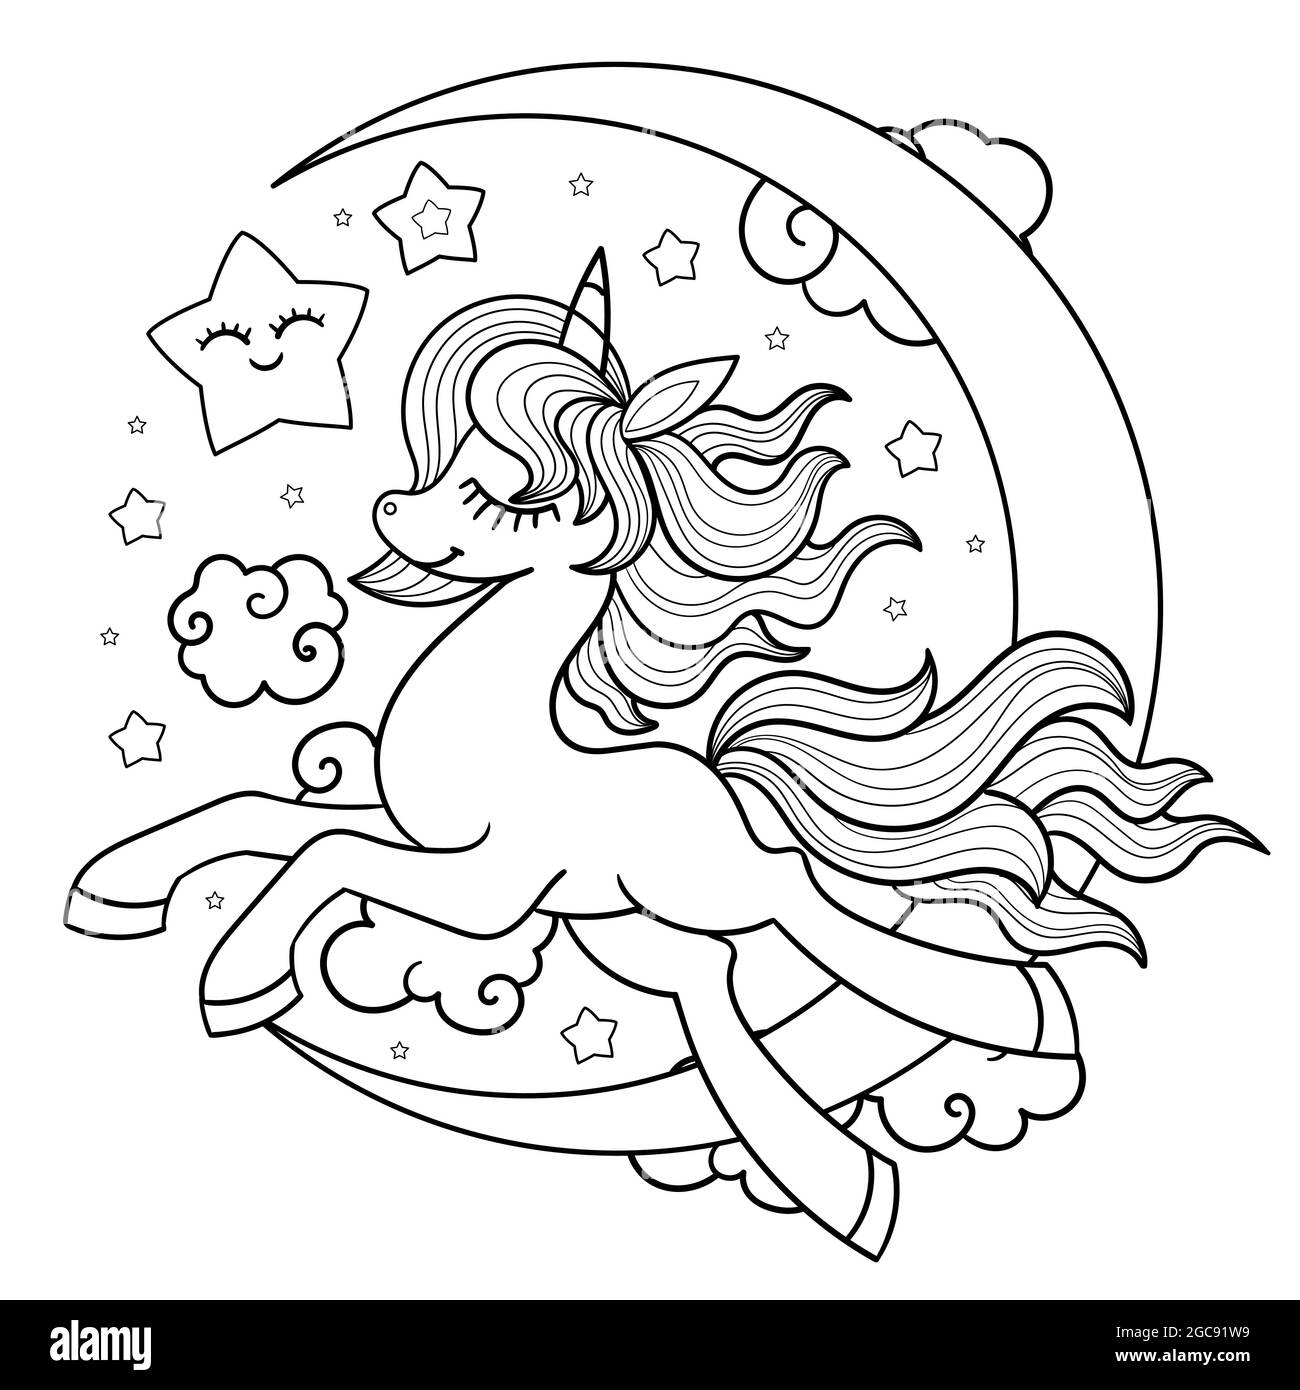 Unicorno con la luna. Illustrazione delle linee in bianco e nero per la colorazione. Vettore Illustrazione Vettoriale